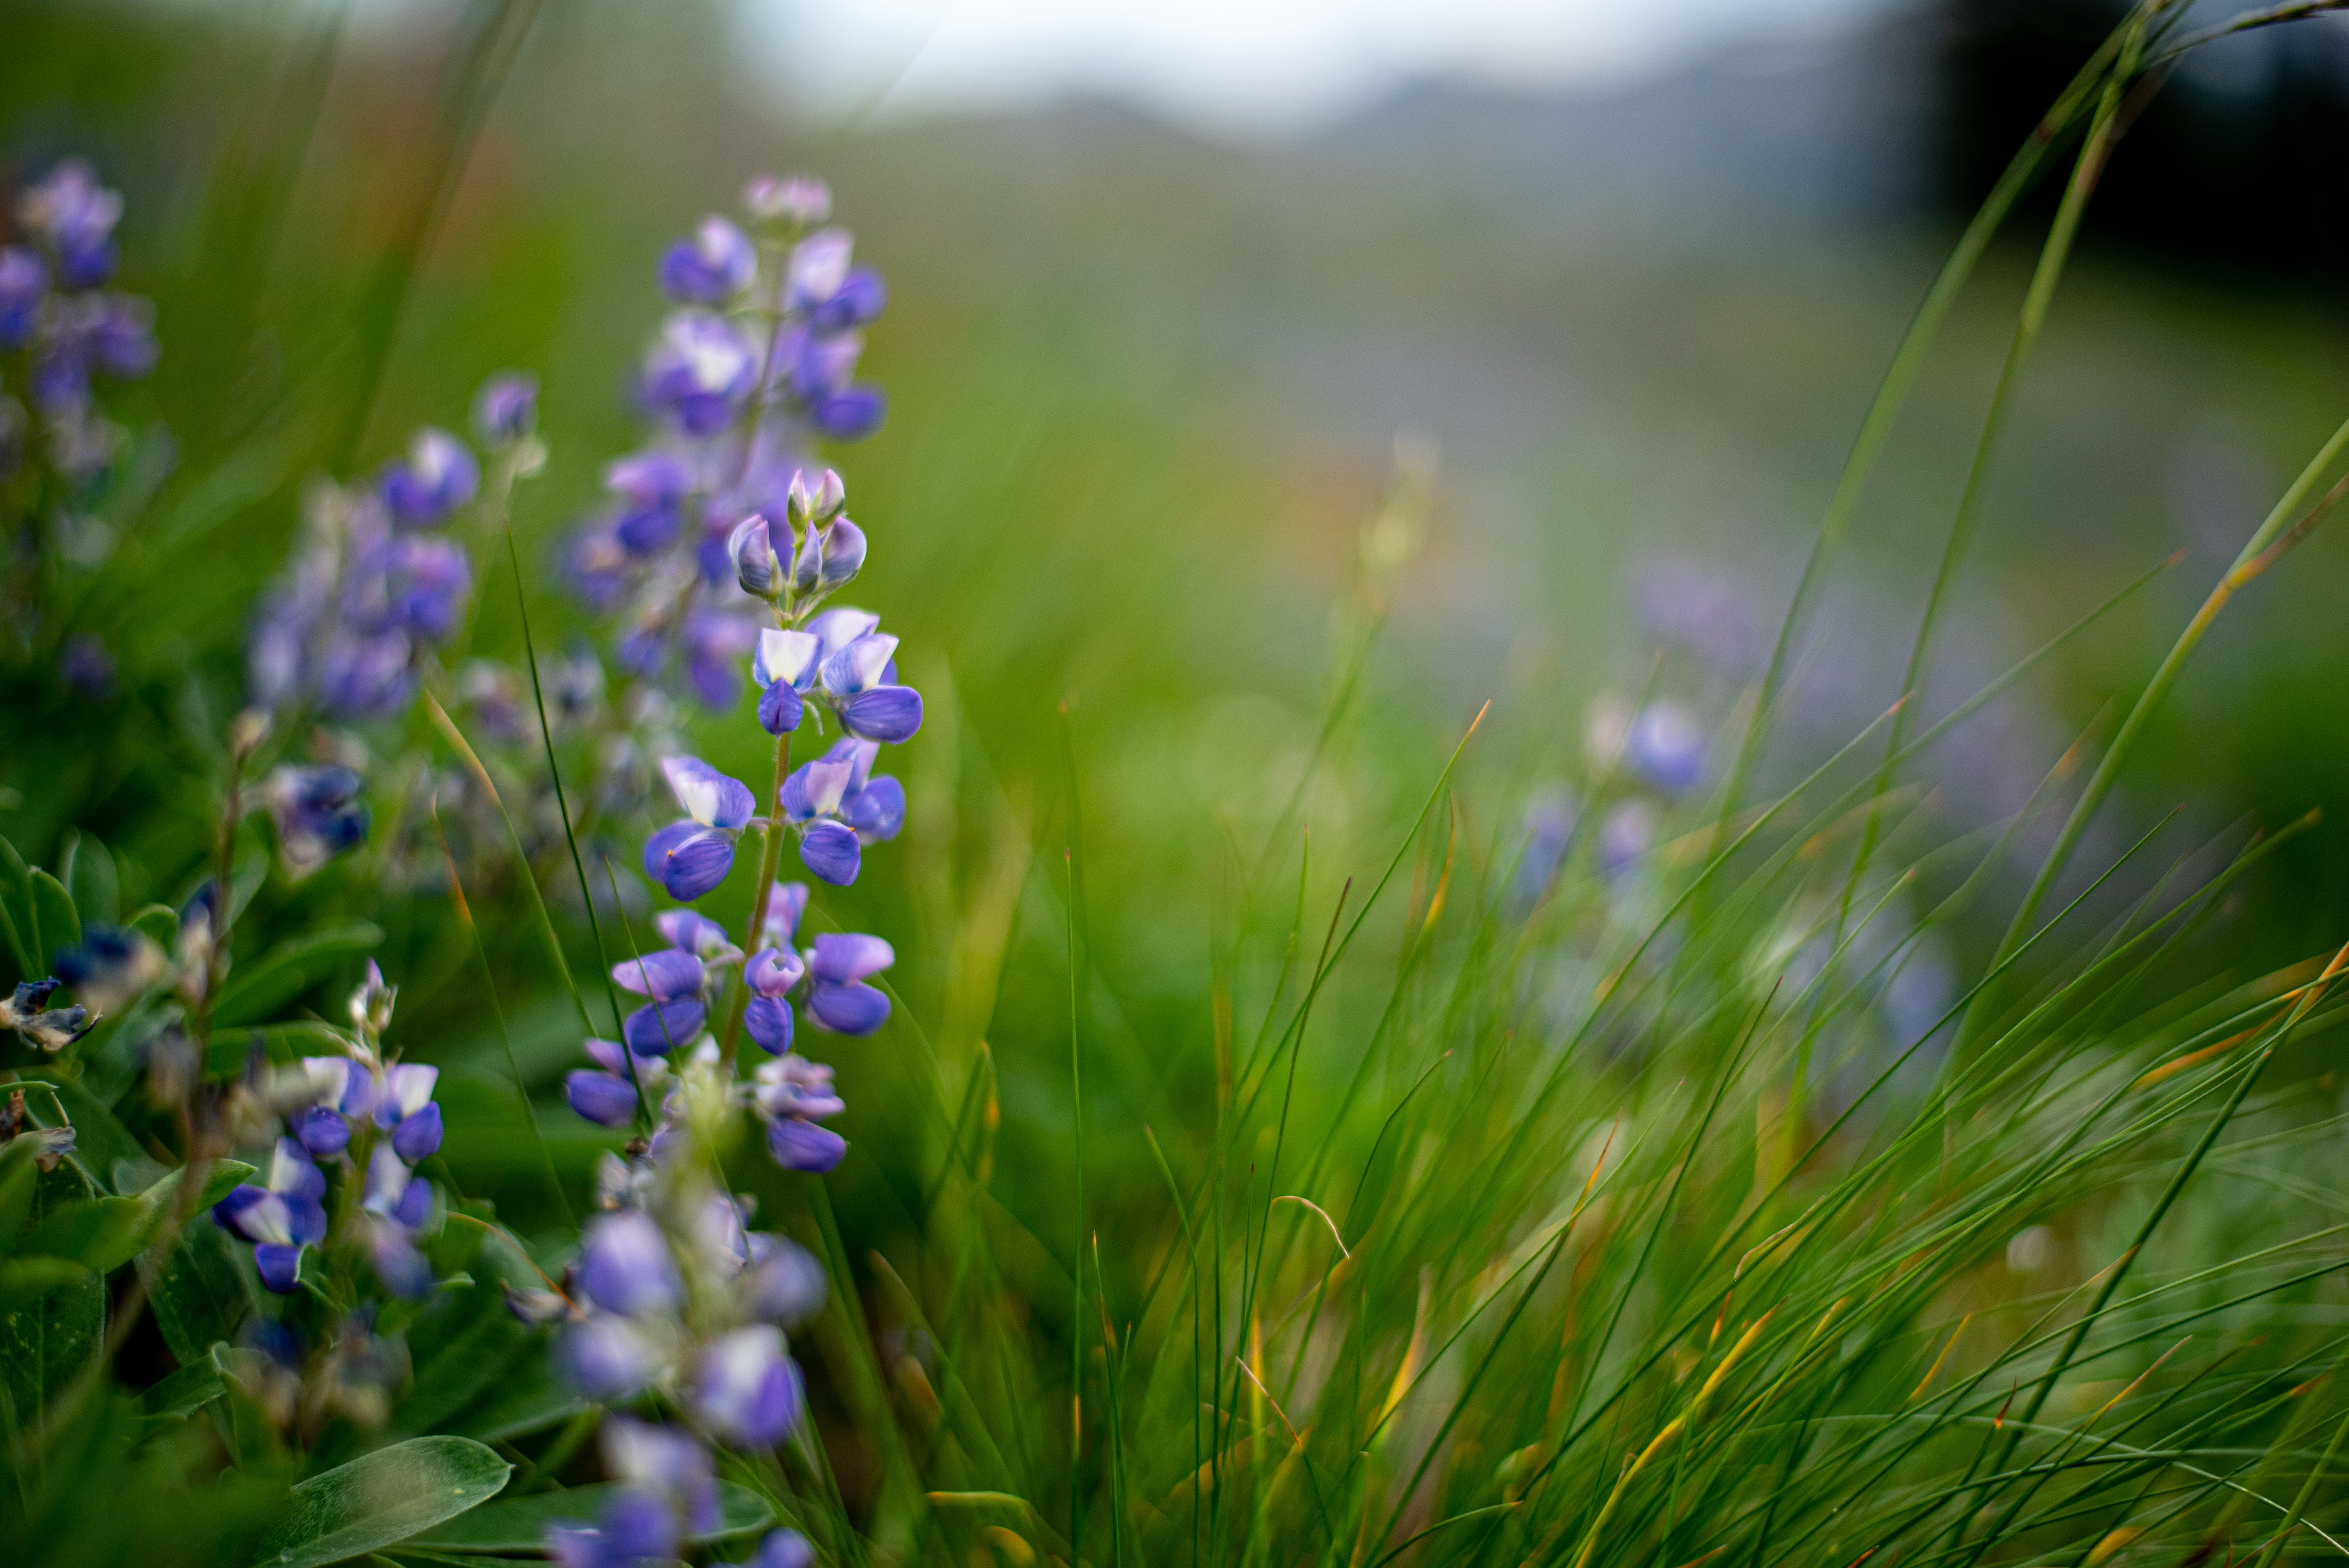 Lupine flowers in an alpine meadow